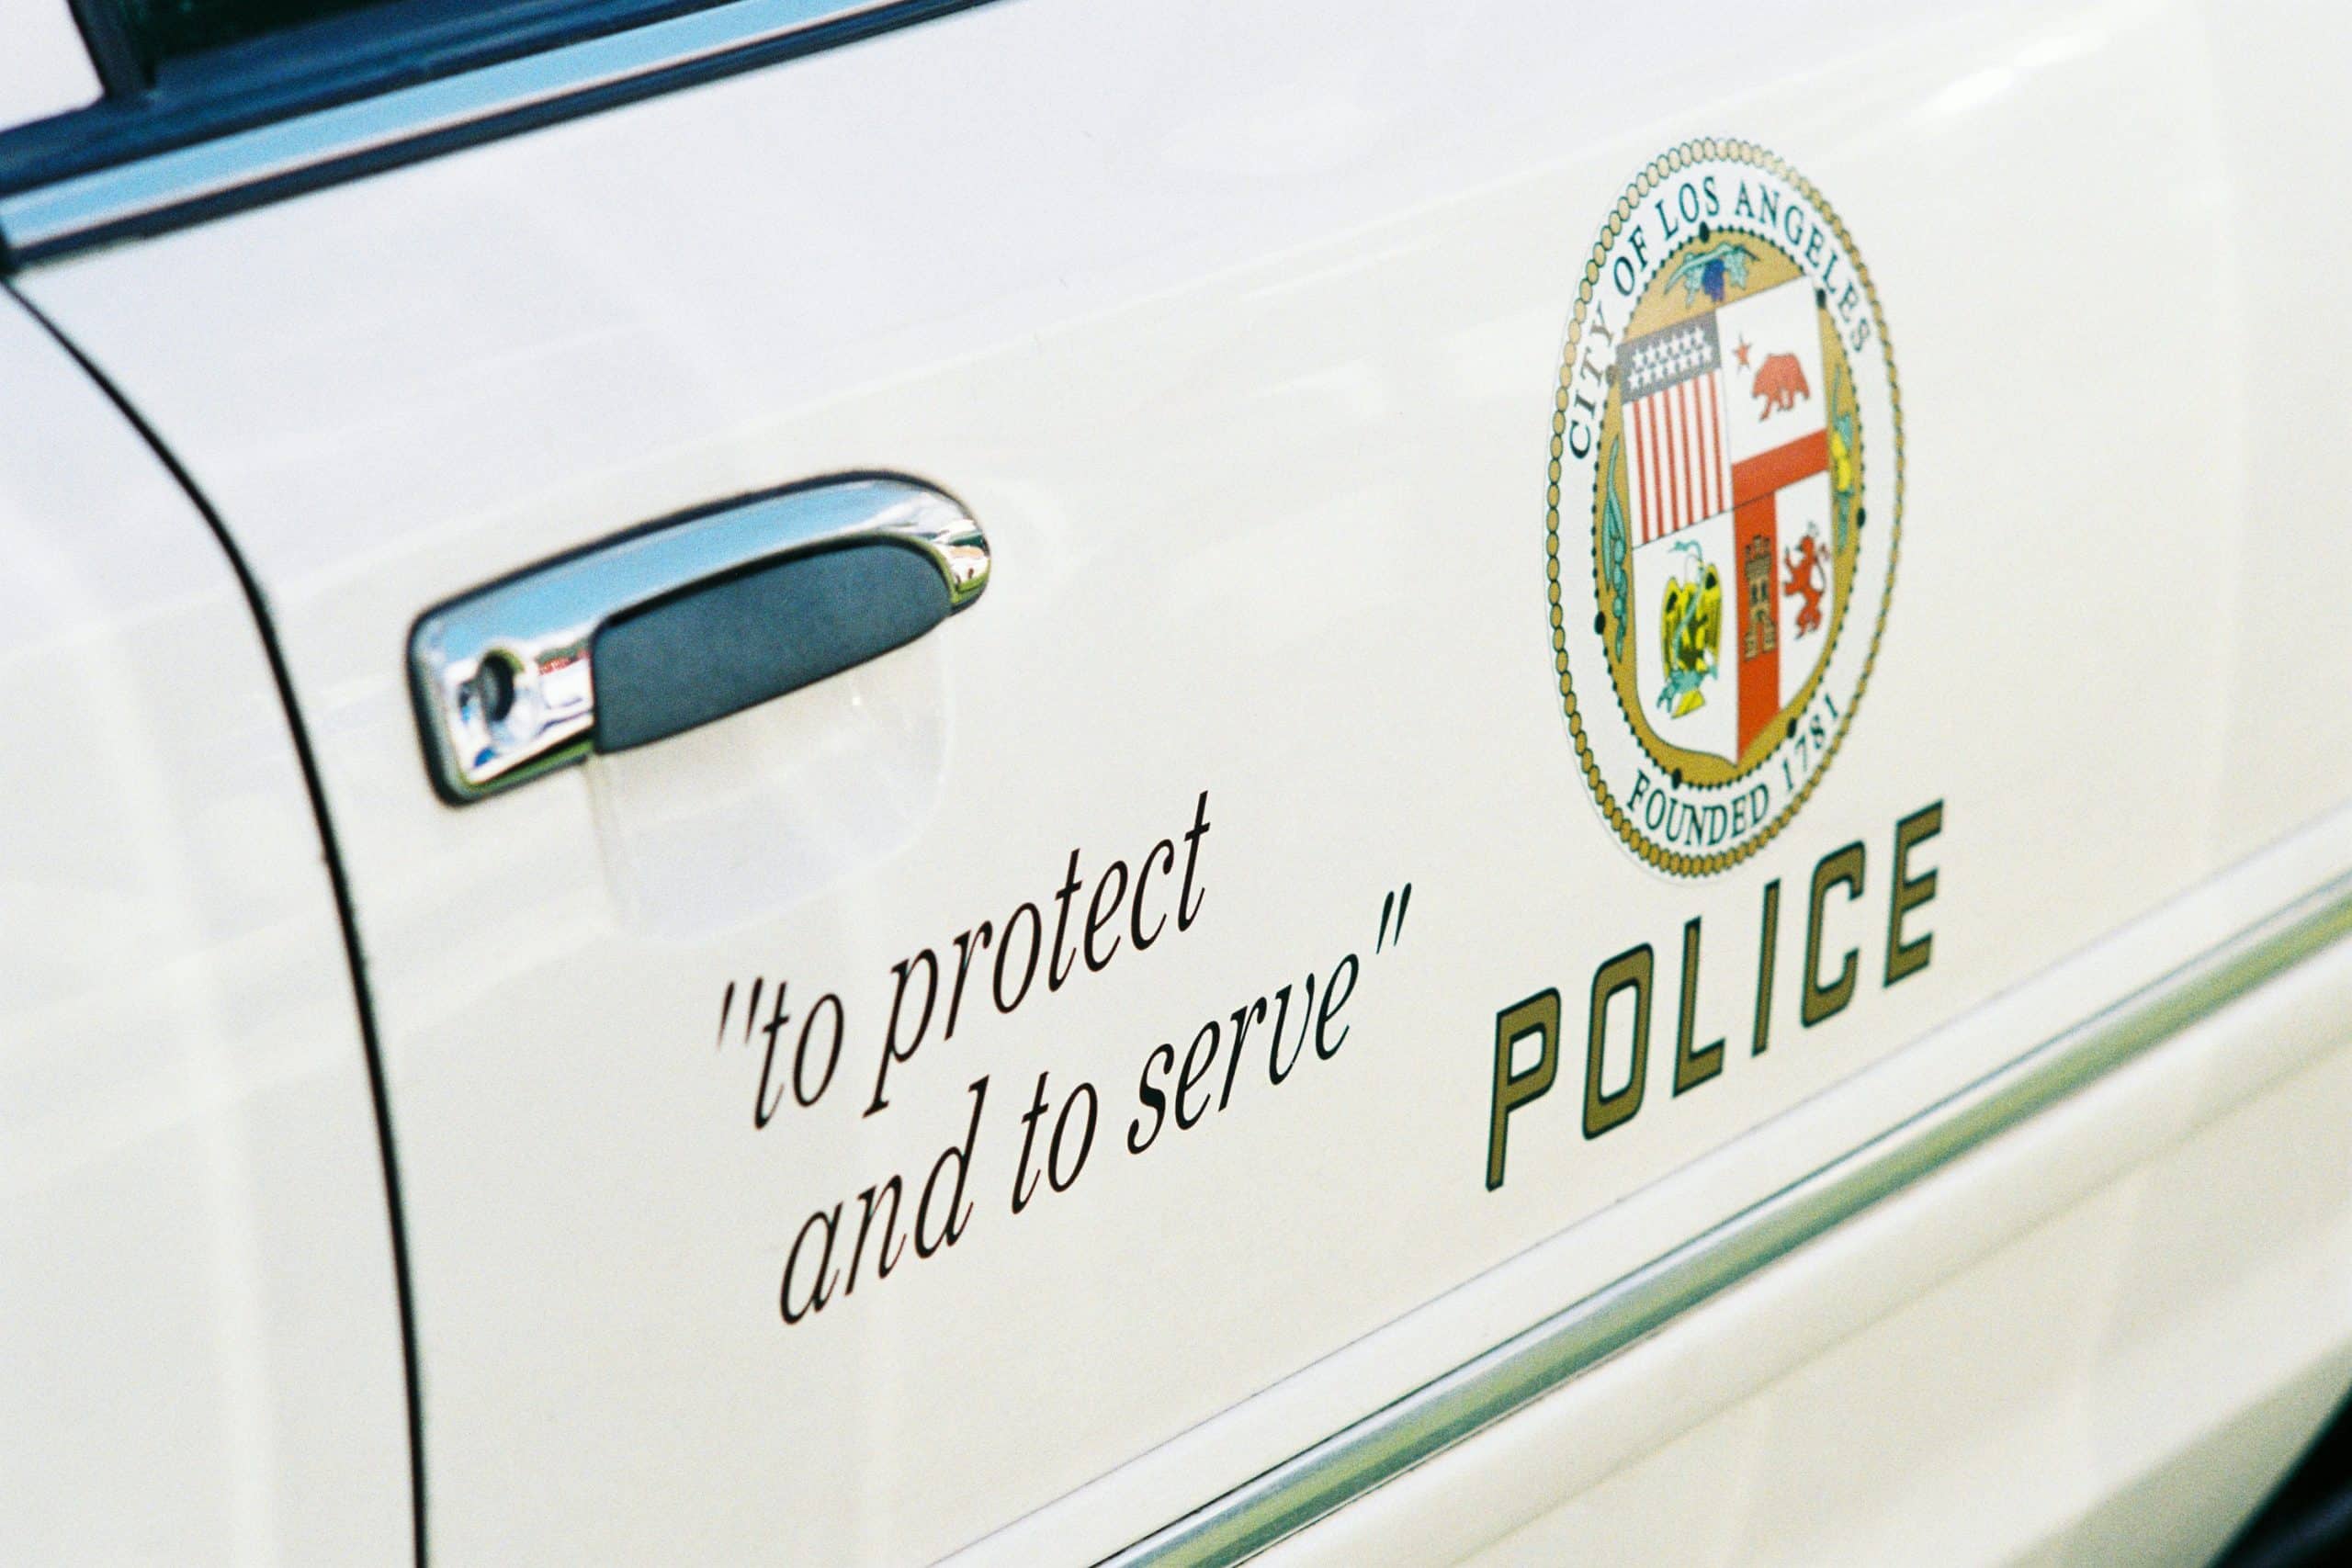 Los Angeles, California police car